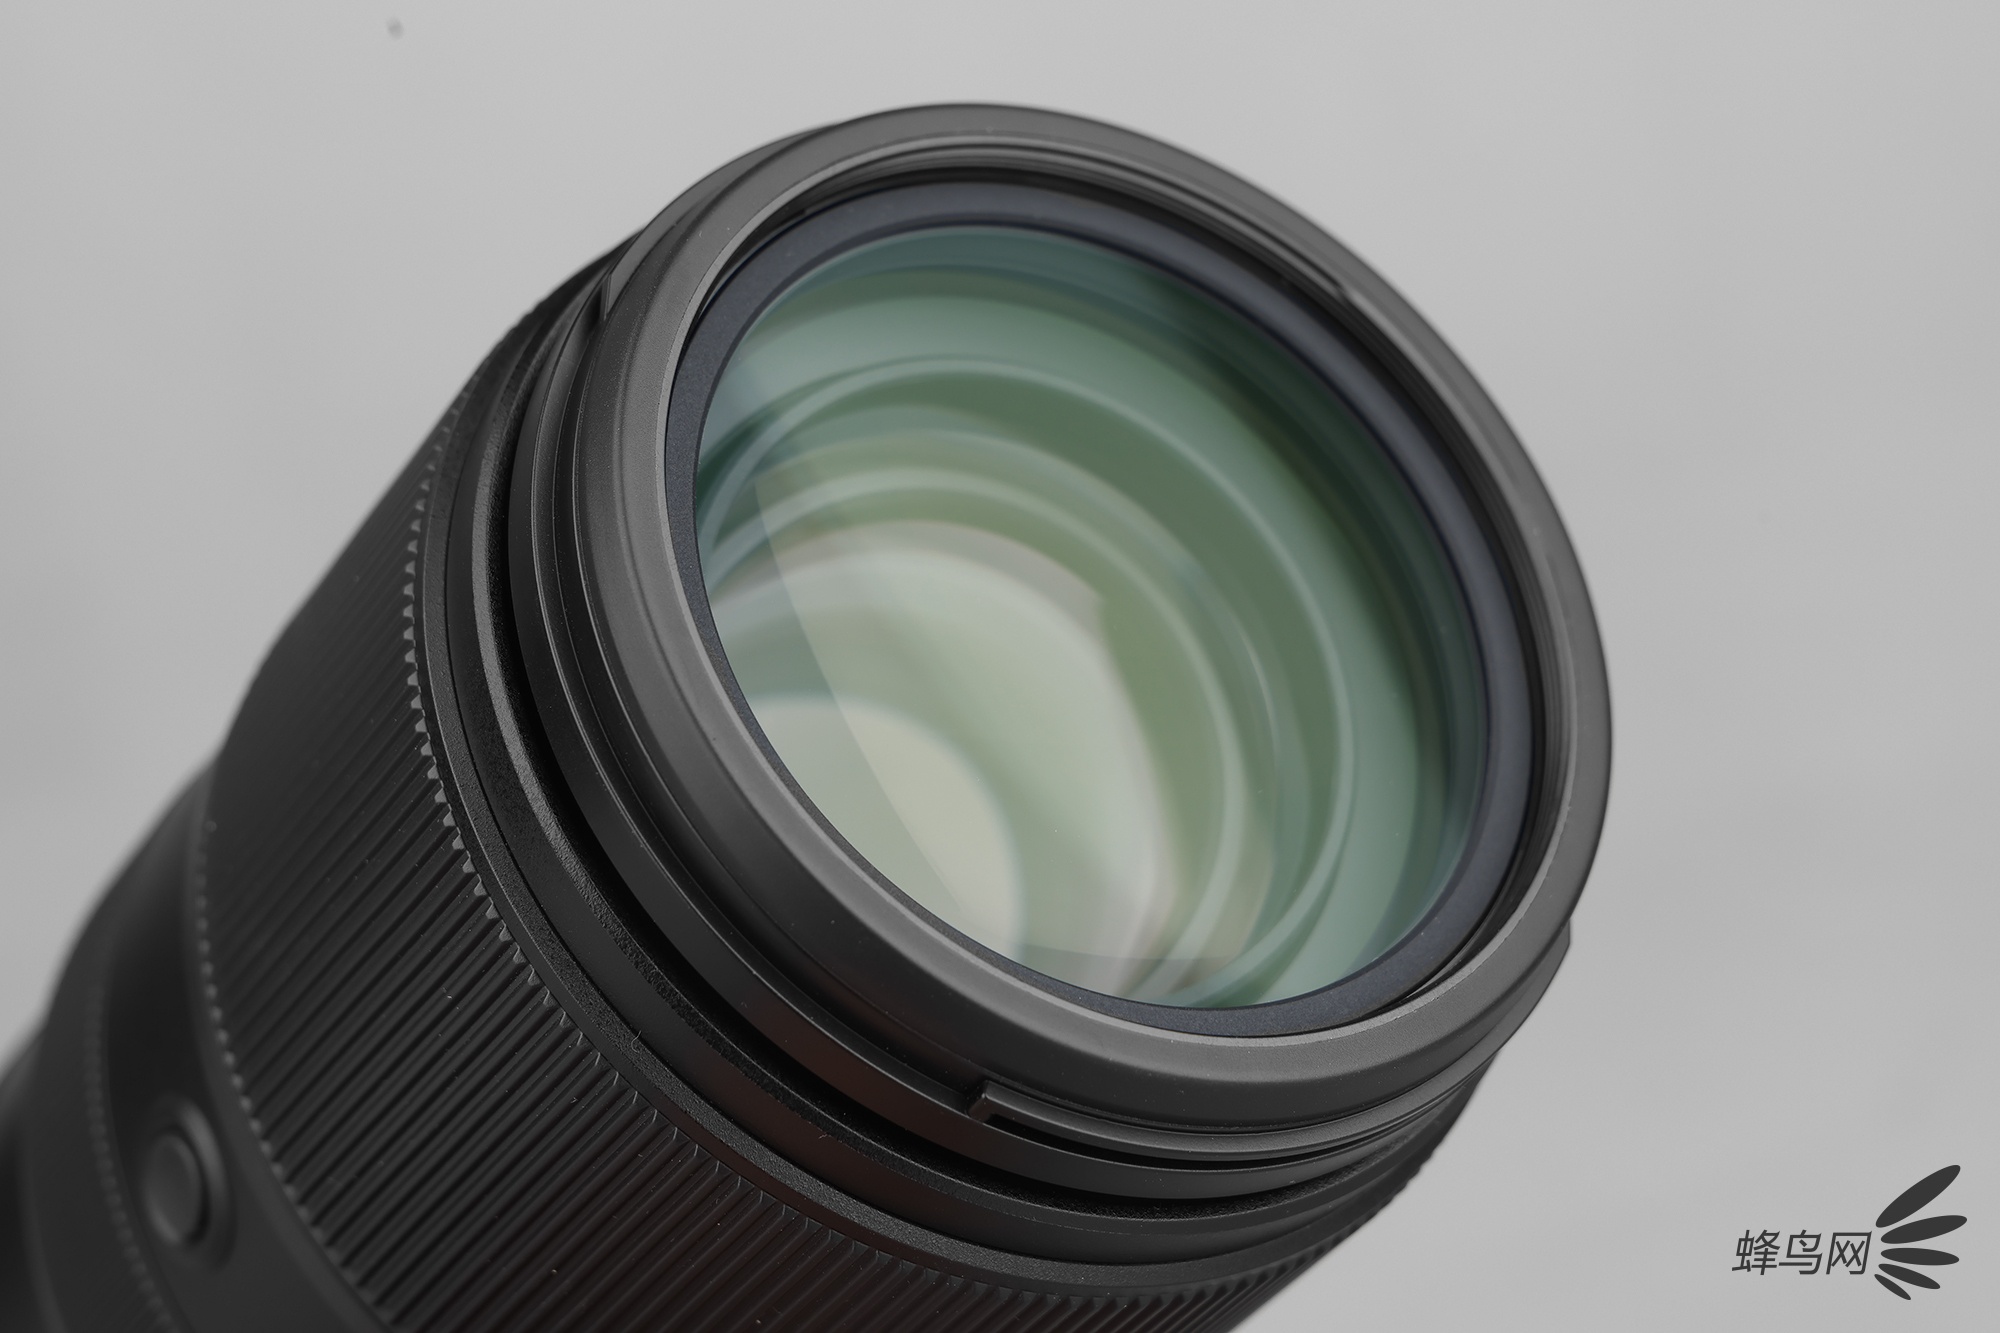 成像与轻便兼备，佳能首支L级超长变焦镜头 RF100-500mm F4.5-7.1评测